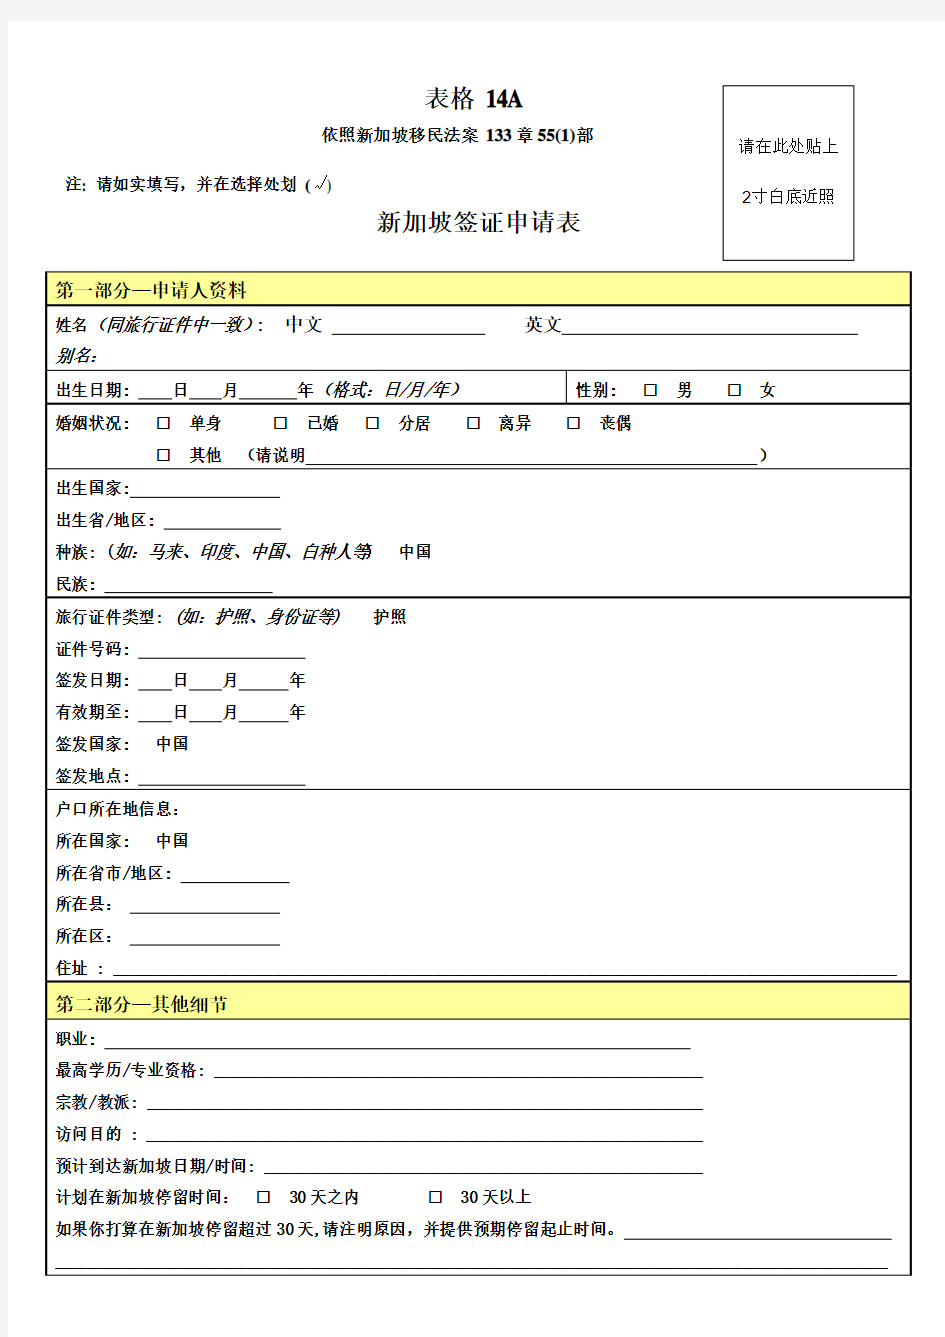 签证--附件1-新加坡签证申请表中文版(2011[1][1].03.16.)